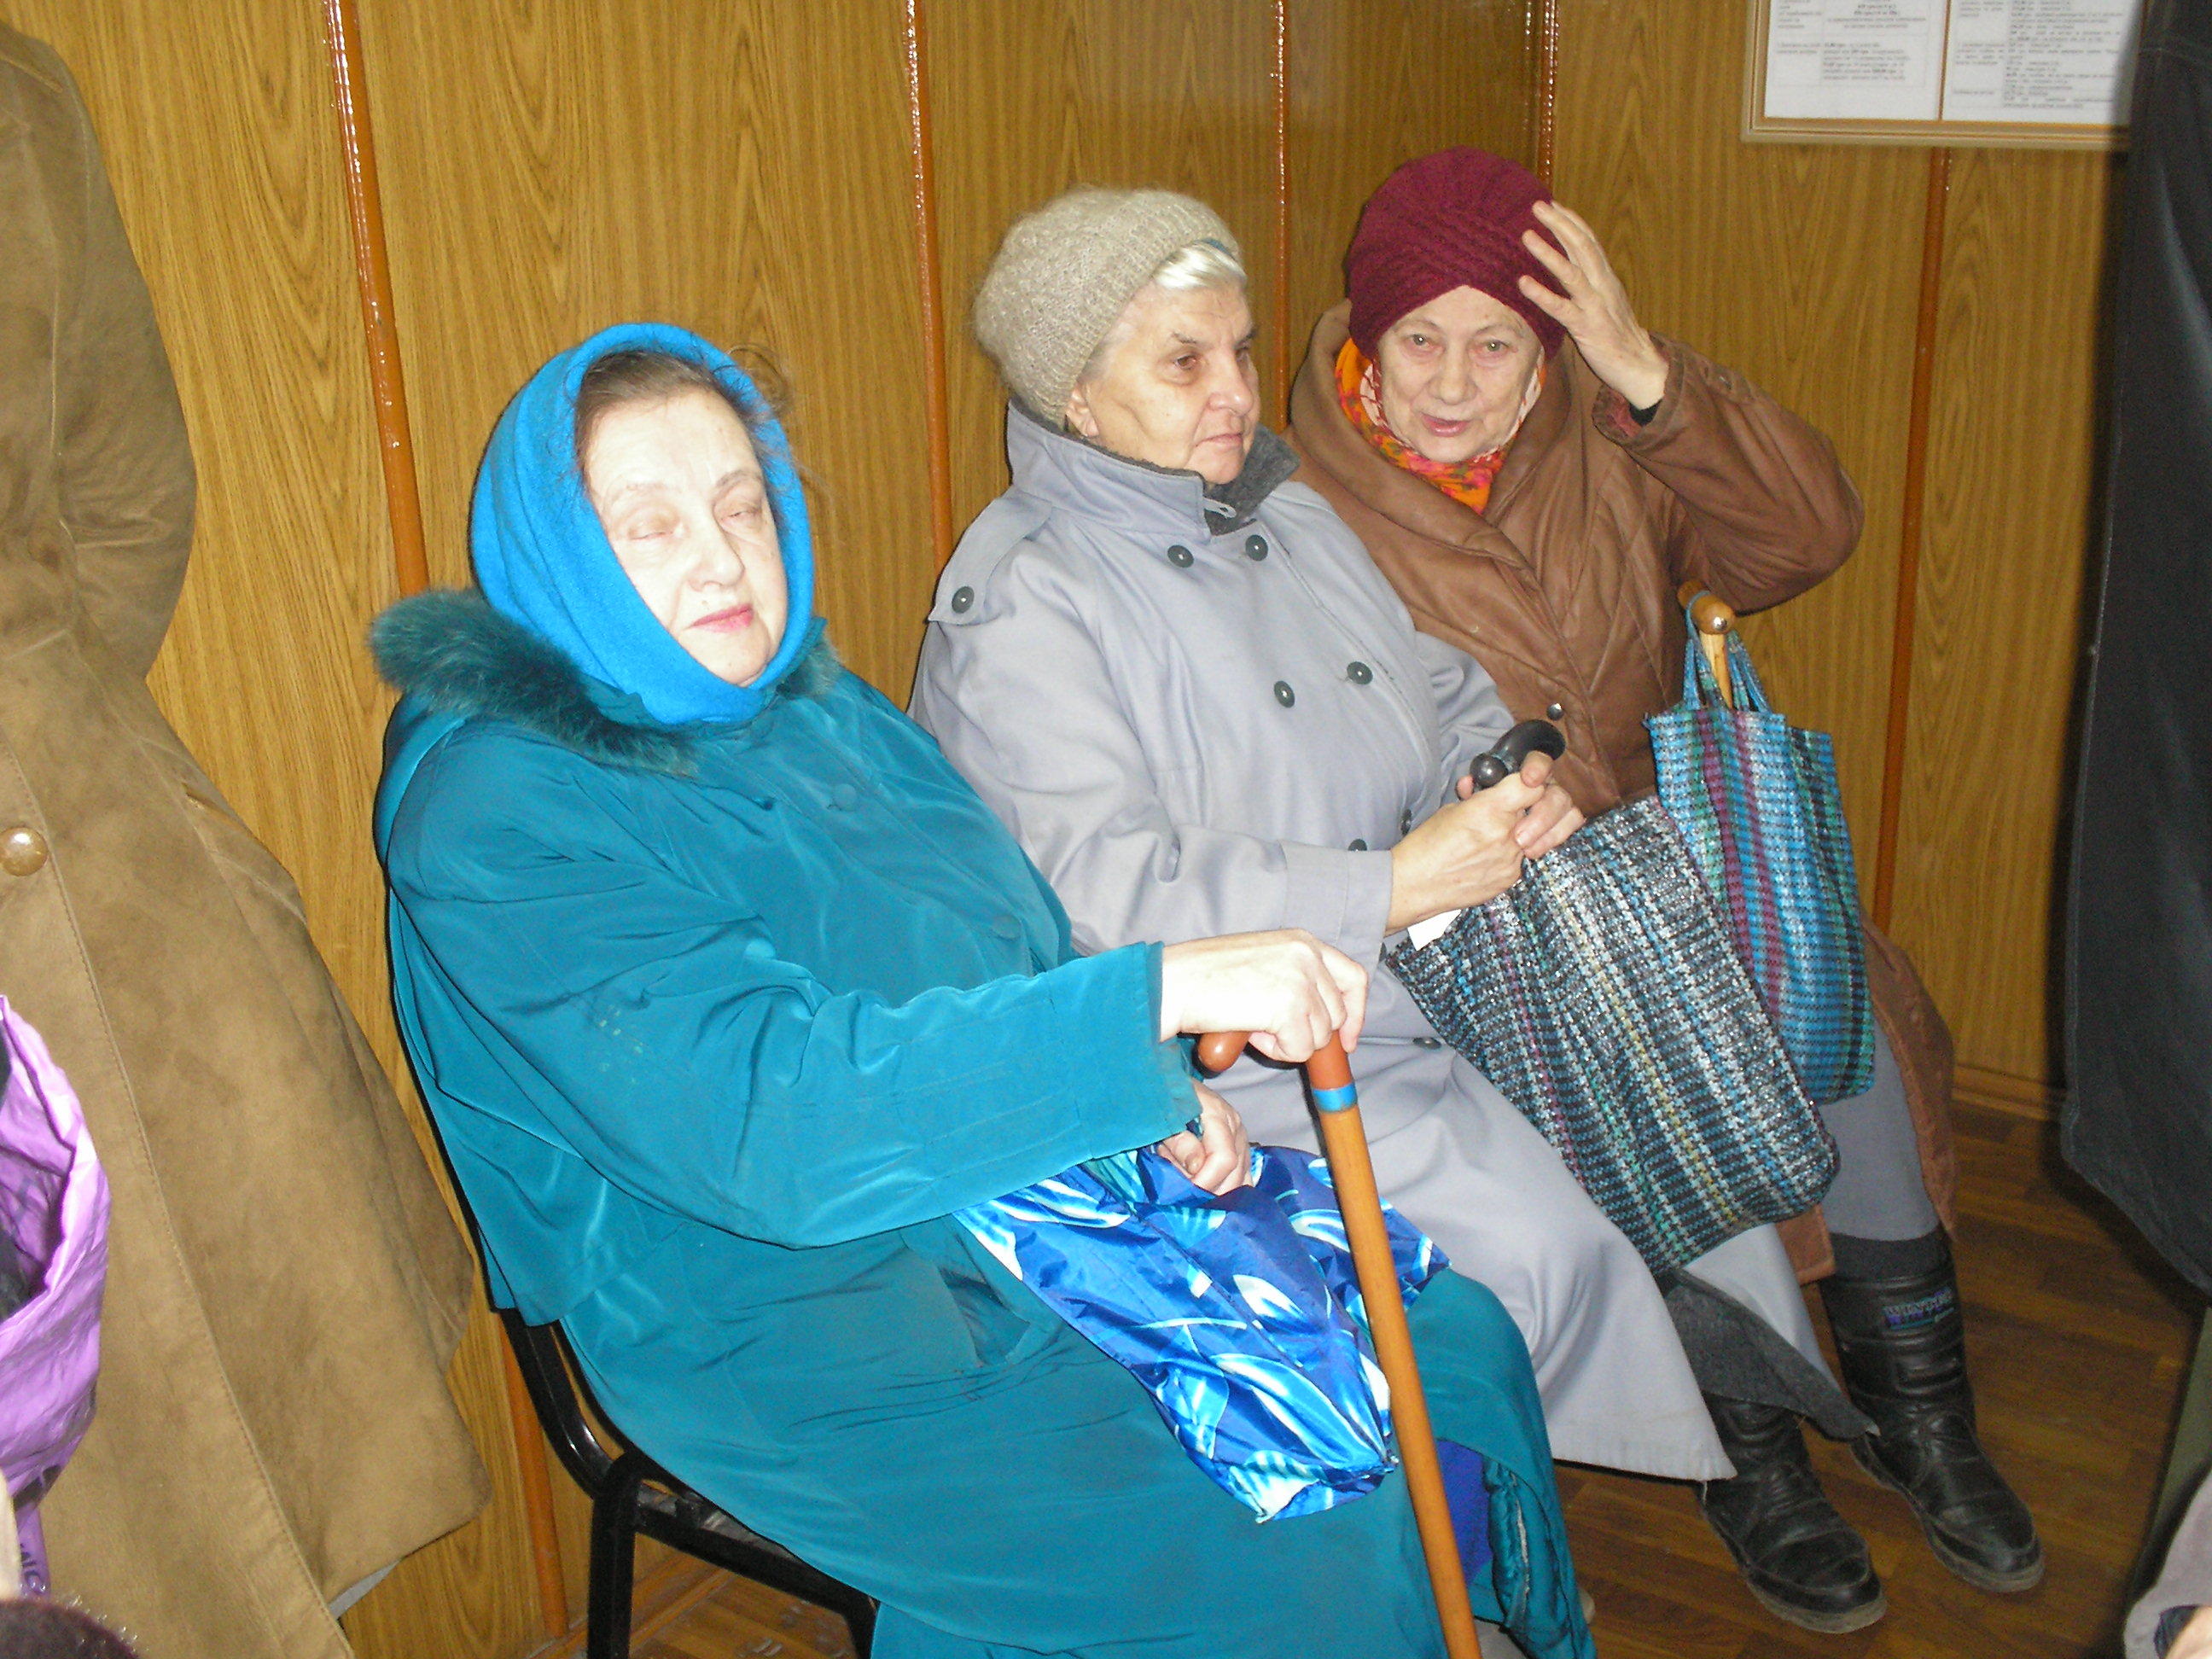 В украинском правительстве заявляют о готовности снизить уровень максимальной пенсии как для будущих, так и для нынешних пенсионеров. Фото из архива "КП".